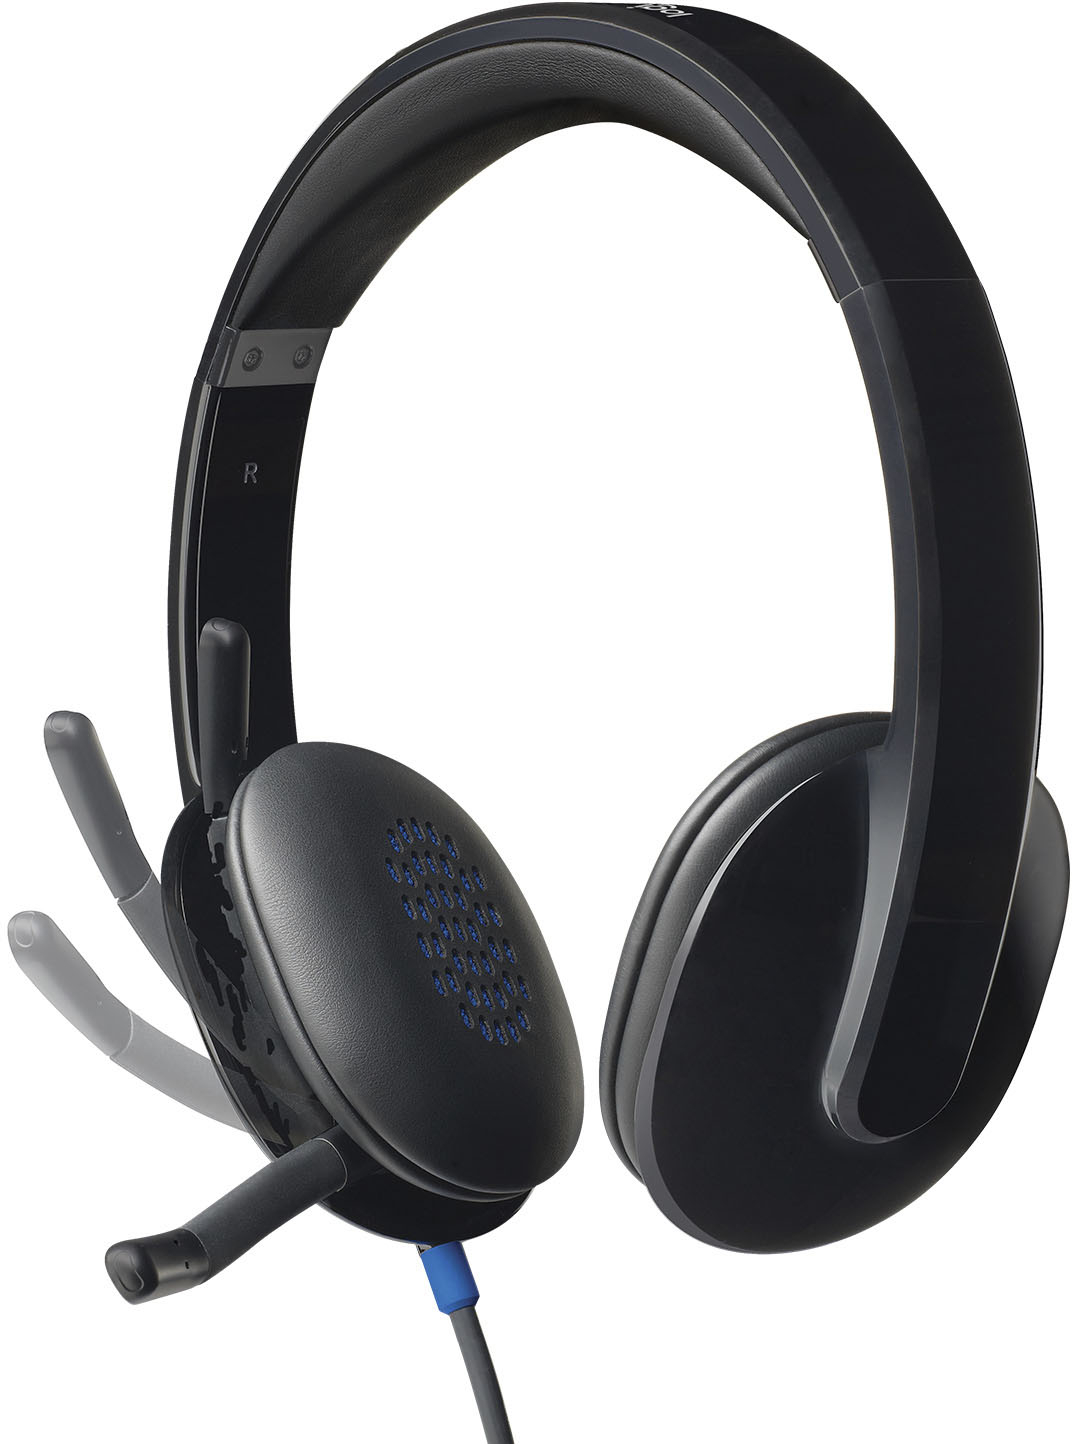 Logitech H540 Wired On-Ear Headset Black 981-000510 - Best Buy